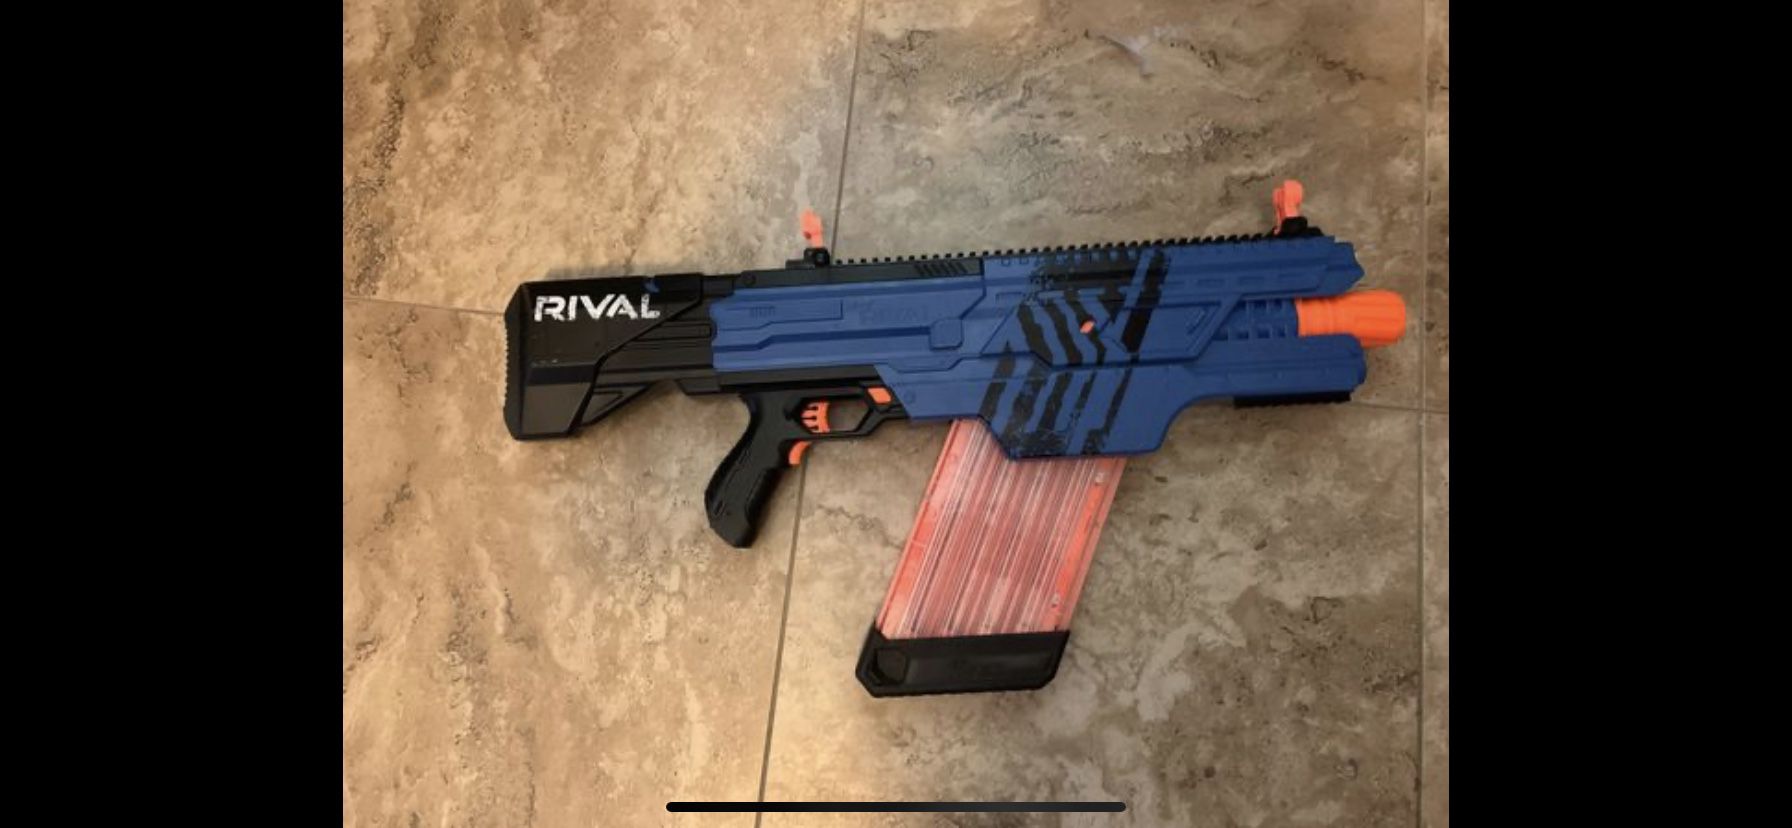 Nerf rival gun